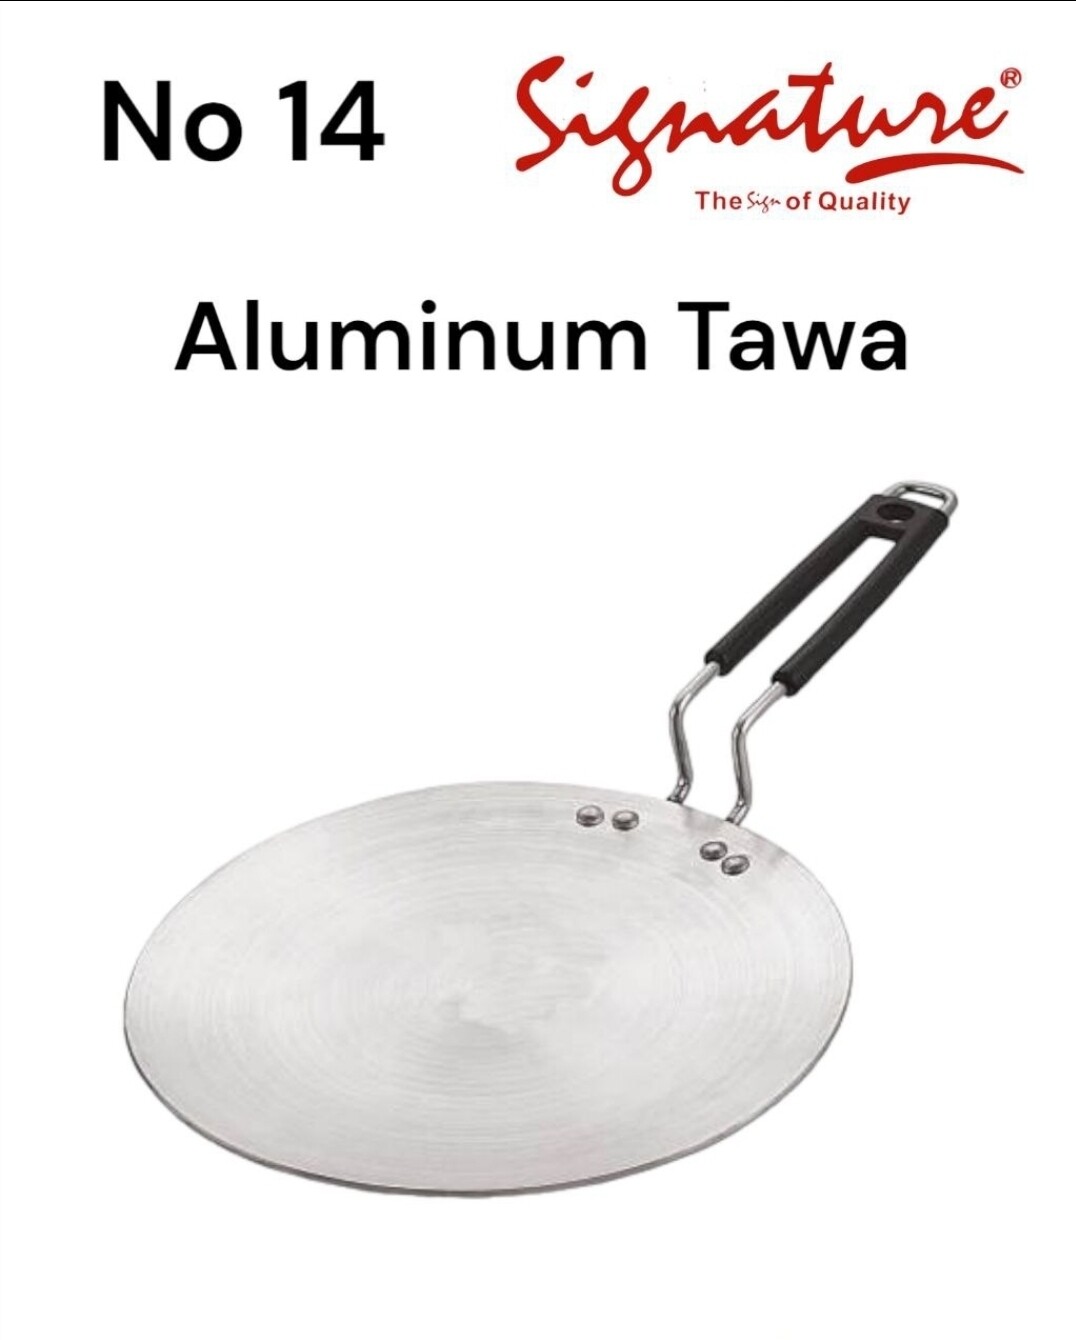 Signature aluminium chapati pan 30cm tawa